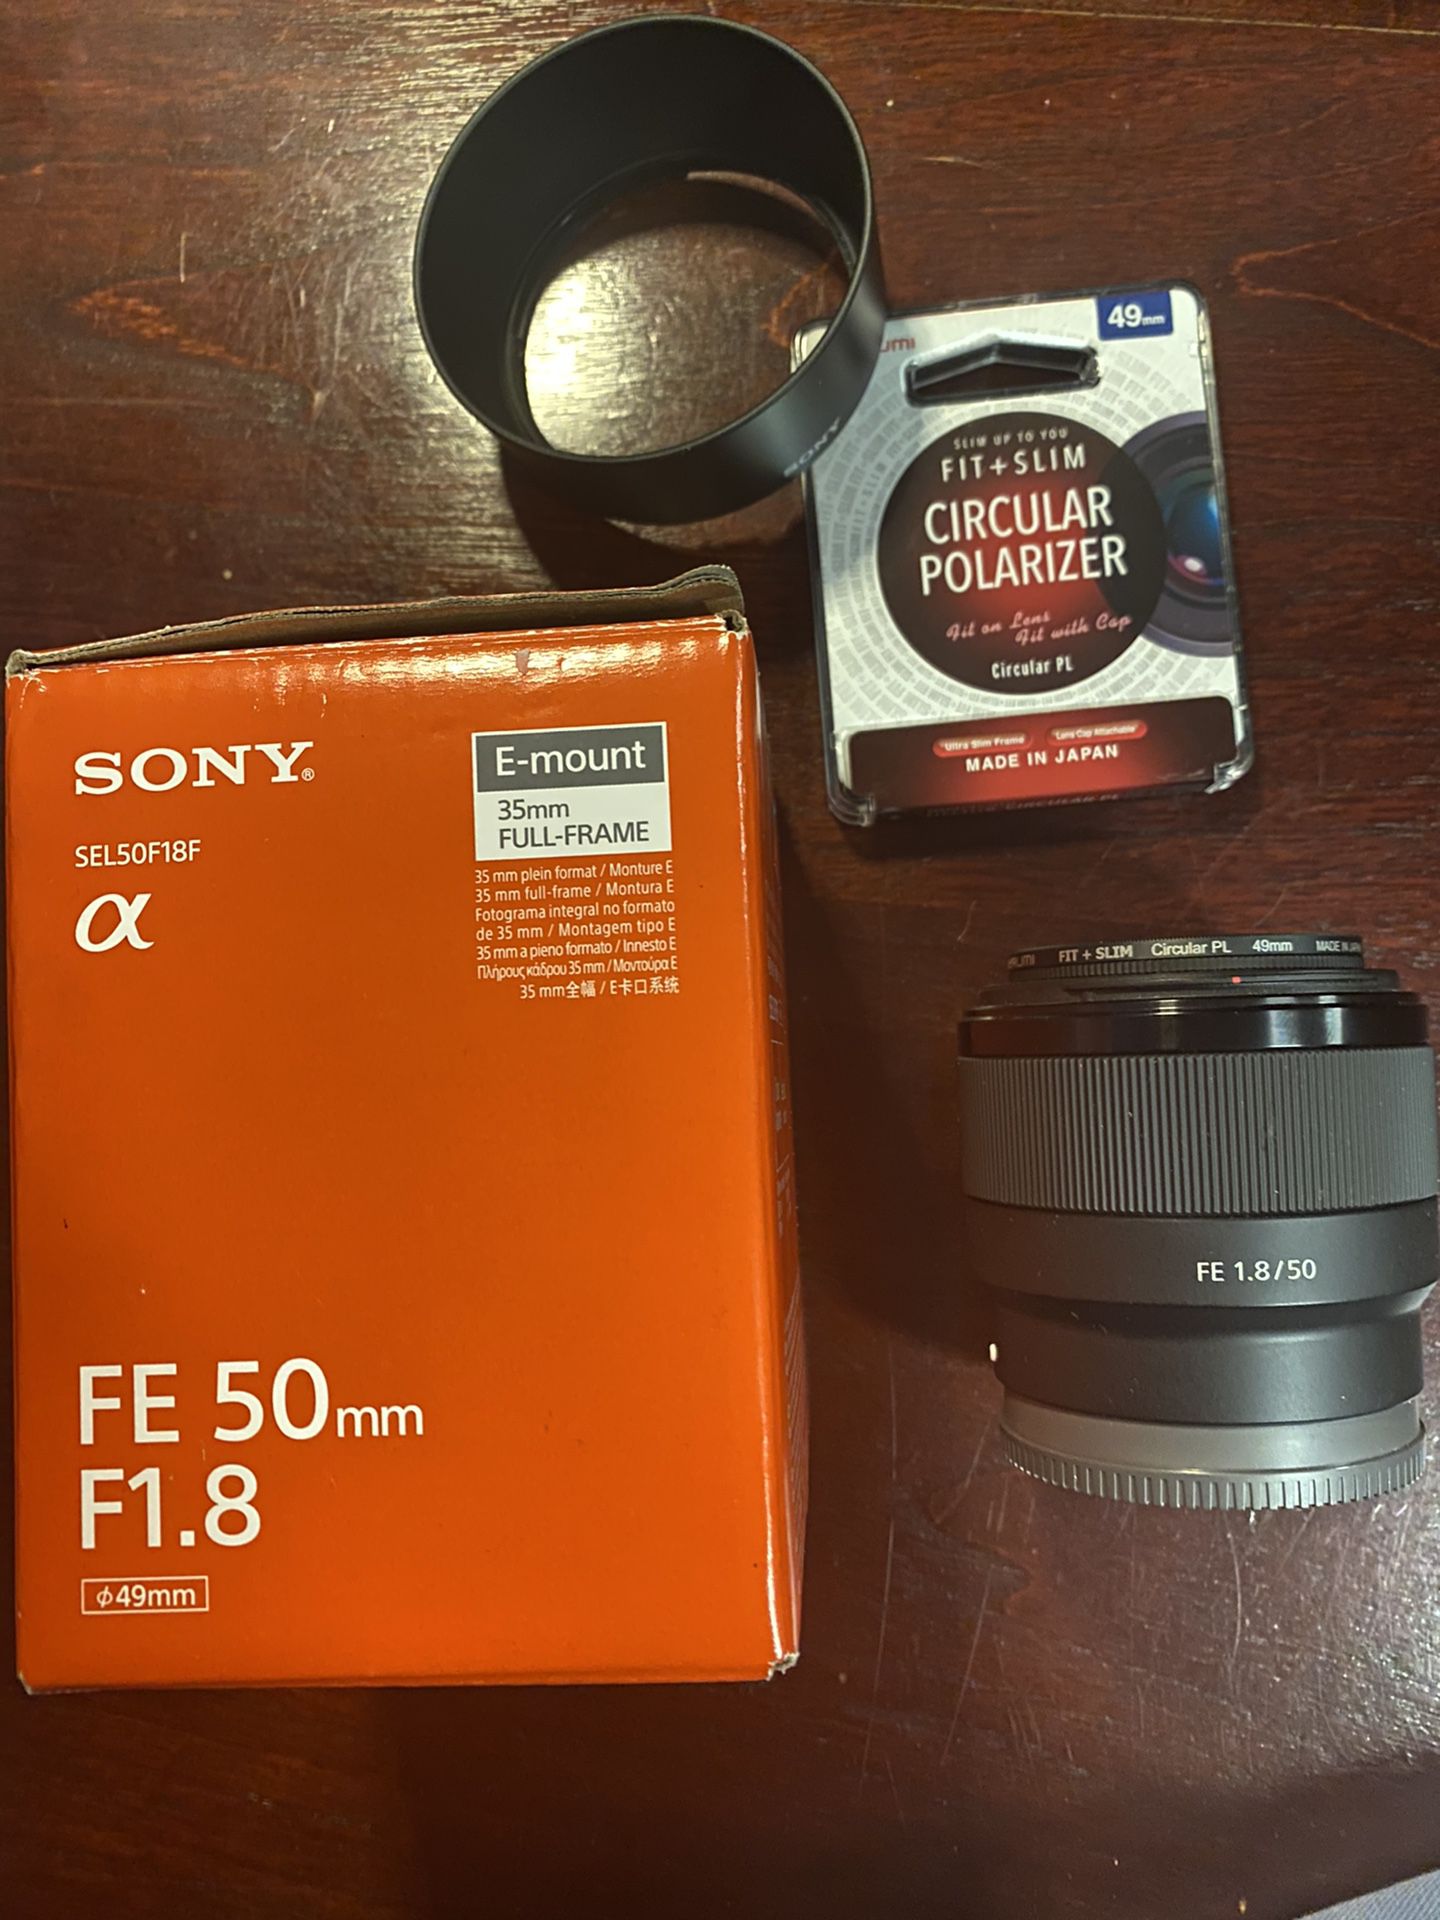 Sony lens 50mm f/1.8 E-mount